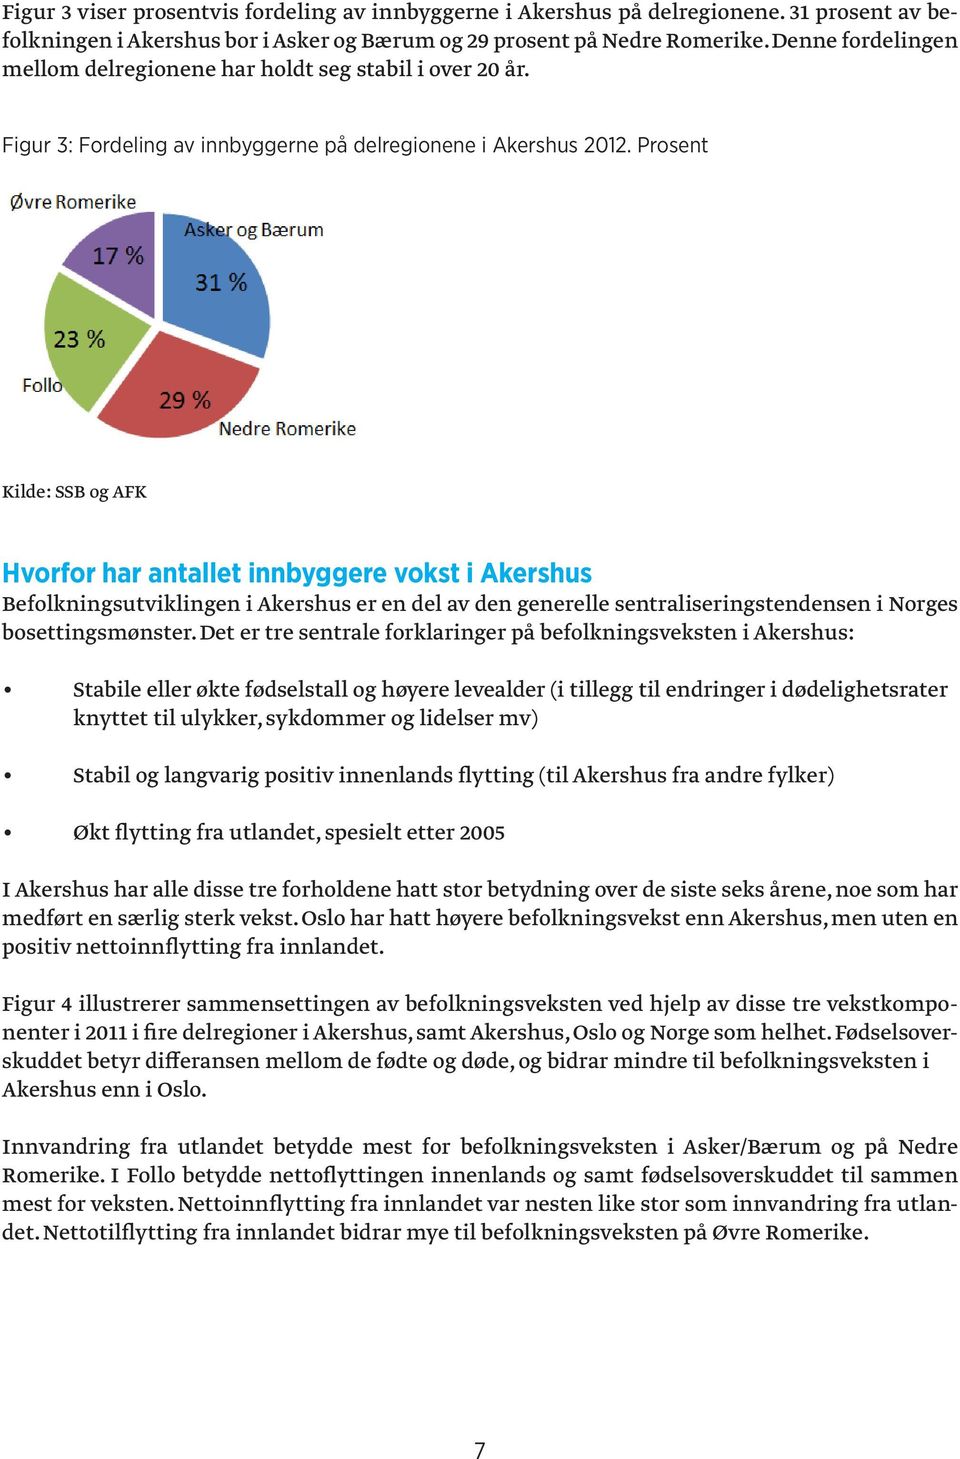 Prosent og AFK Hvorfor har antallet innbyggere vokst i Akershus Befolkningsutviklingen i Akershus er en del av den generelle sentraliseringstendensen i Norges bosettingsmønster.